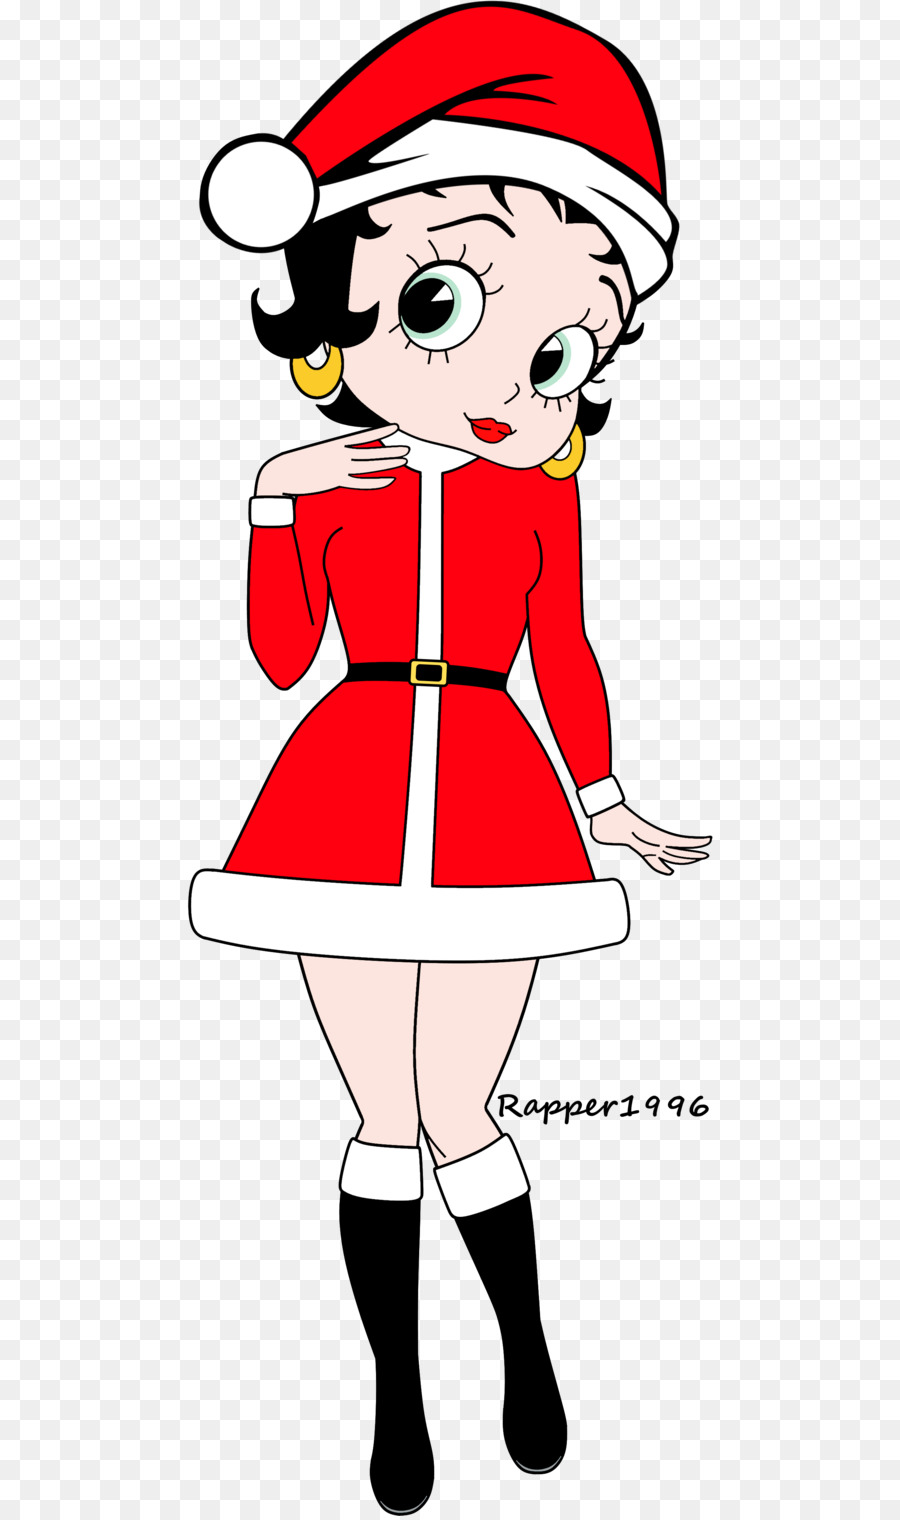 Betty Boop Koko il Clown Fumetti dei cartoni animati Disegno - Babbo Natale